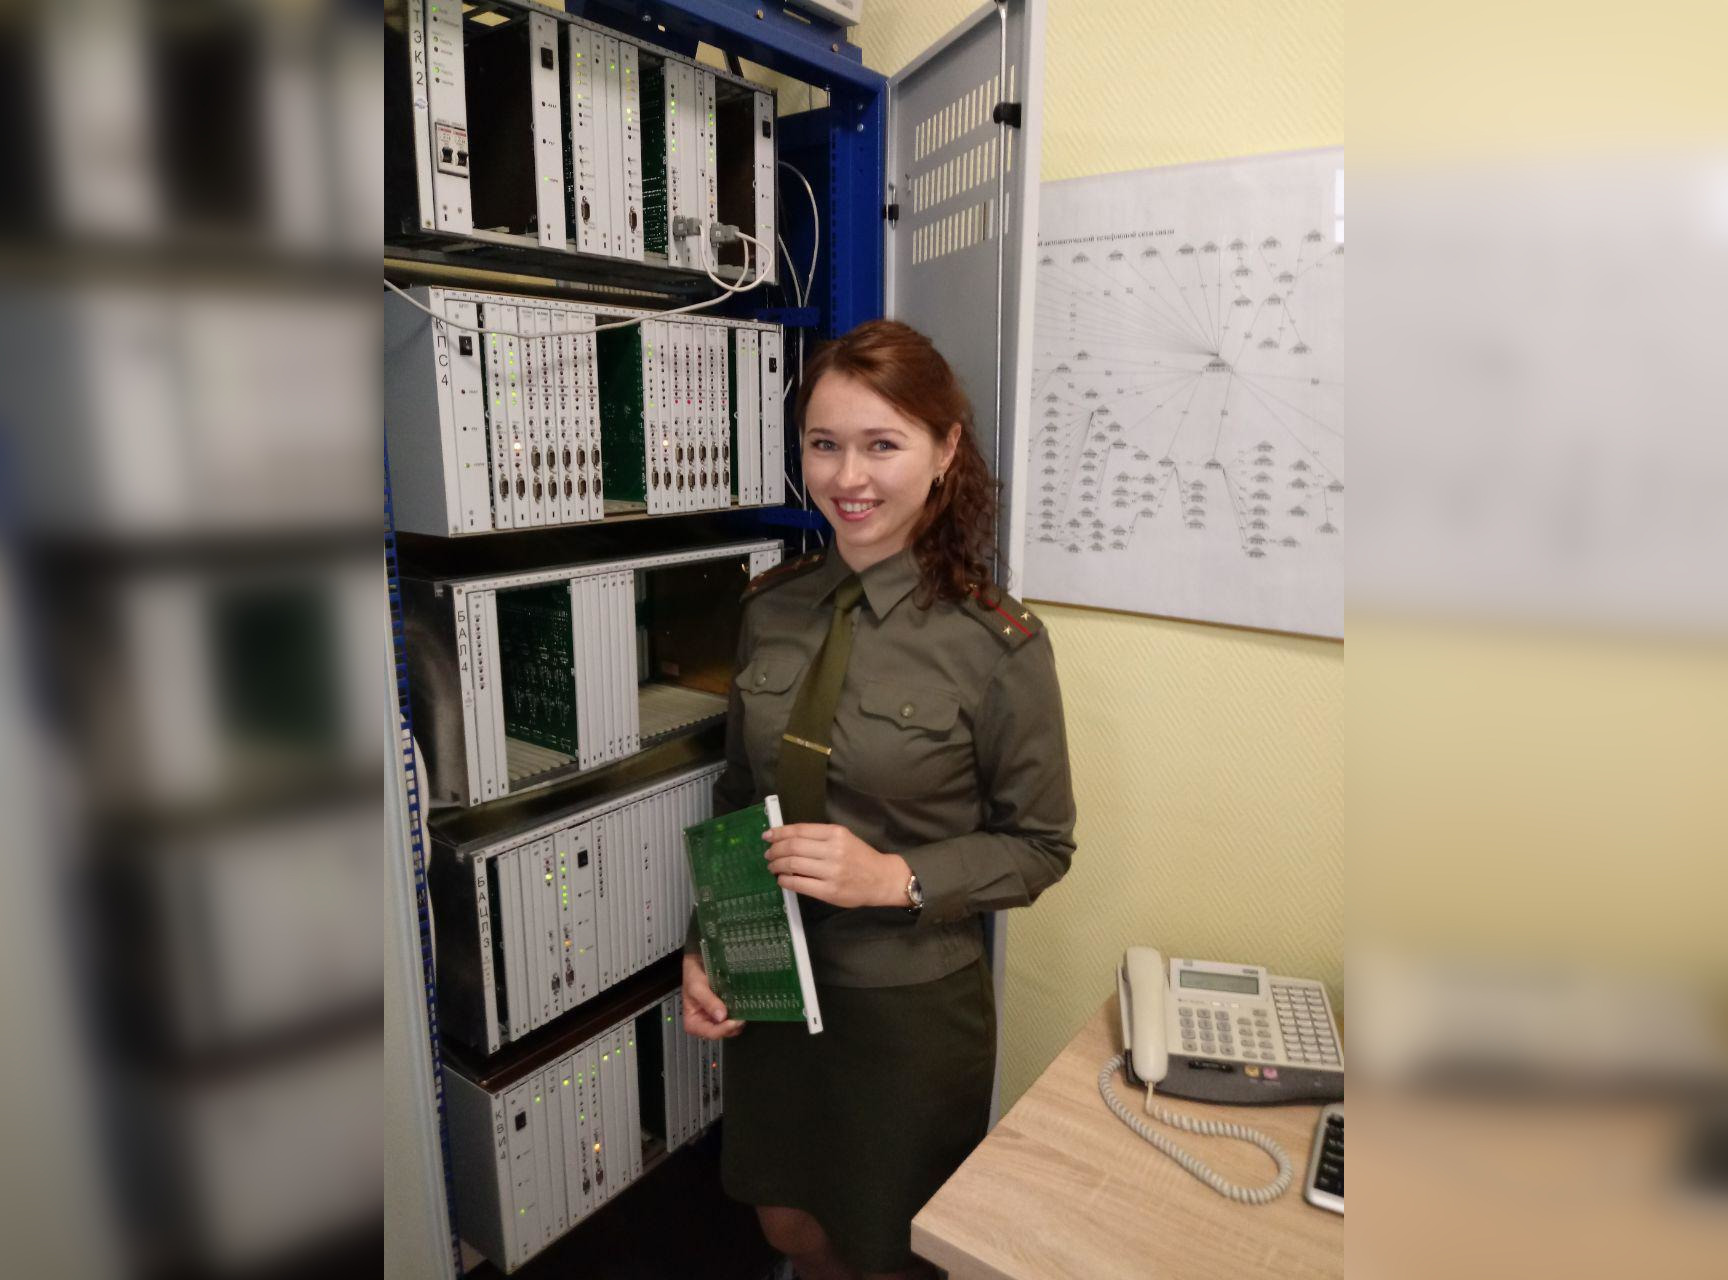 #НЕслабыйпол: смотрите, какие девушки служат в белорусской армии!